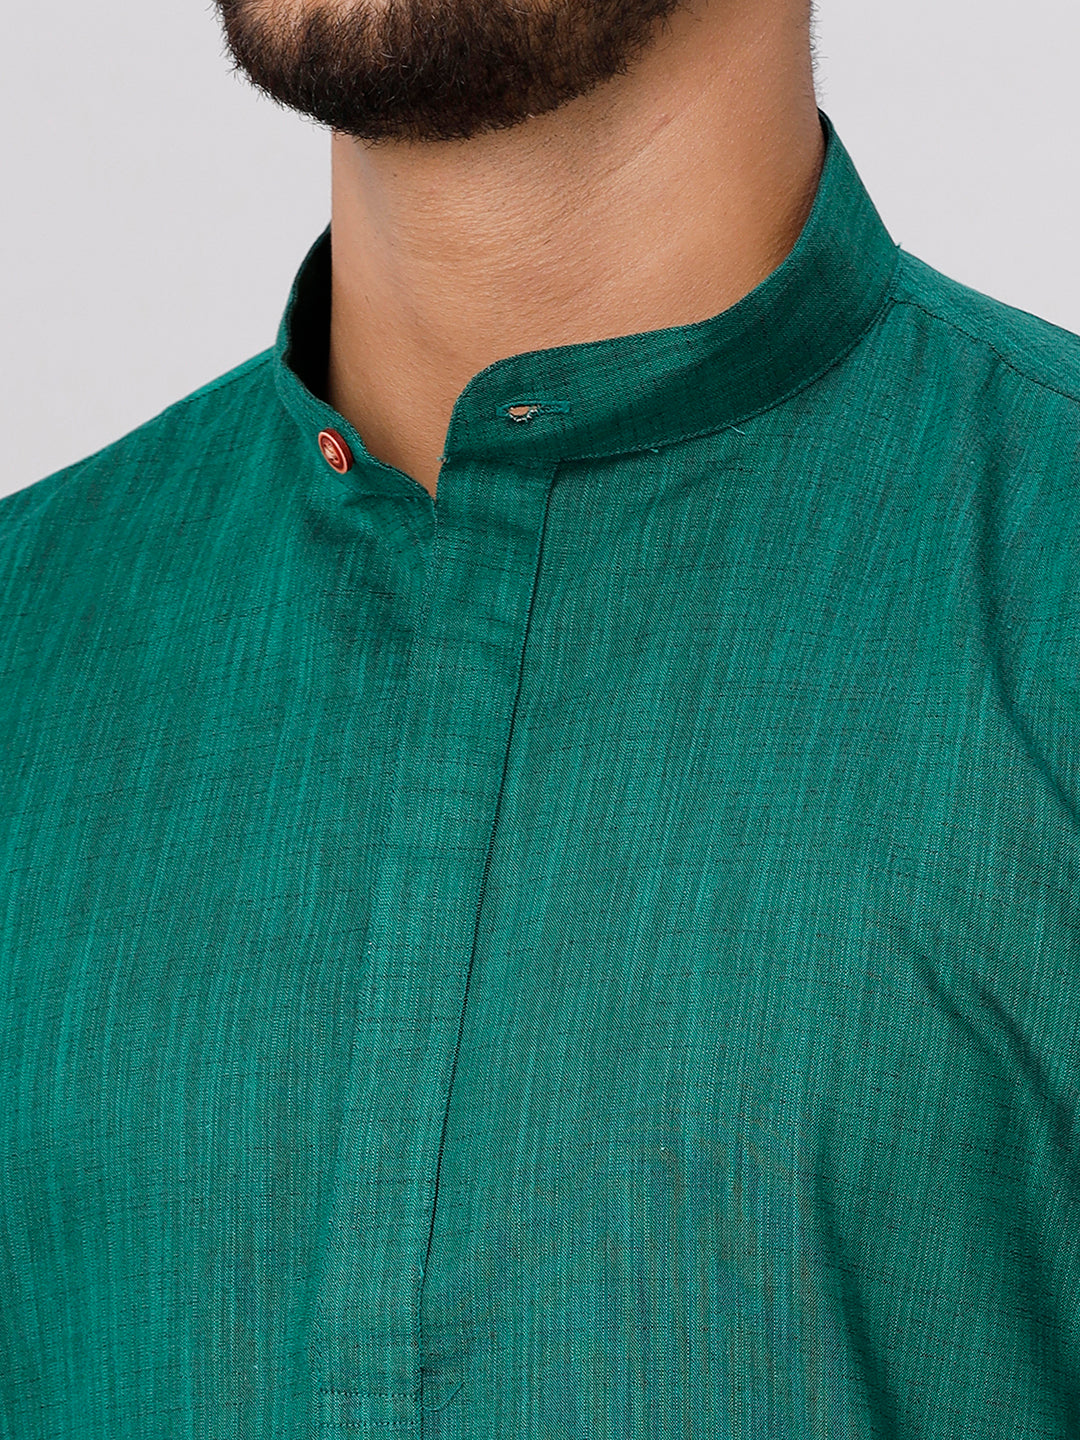 Mens Medium Length Dark Green Kurta with Cream Panchakacham Combo FS5-Zoom view